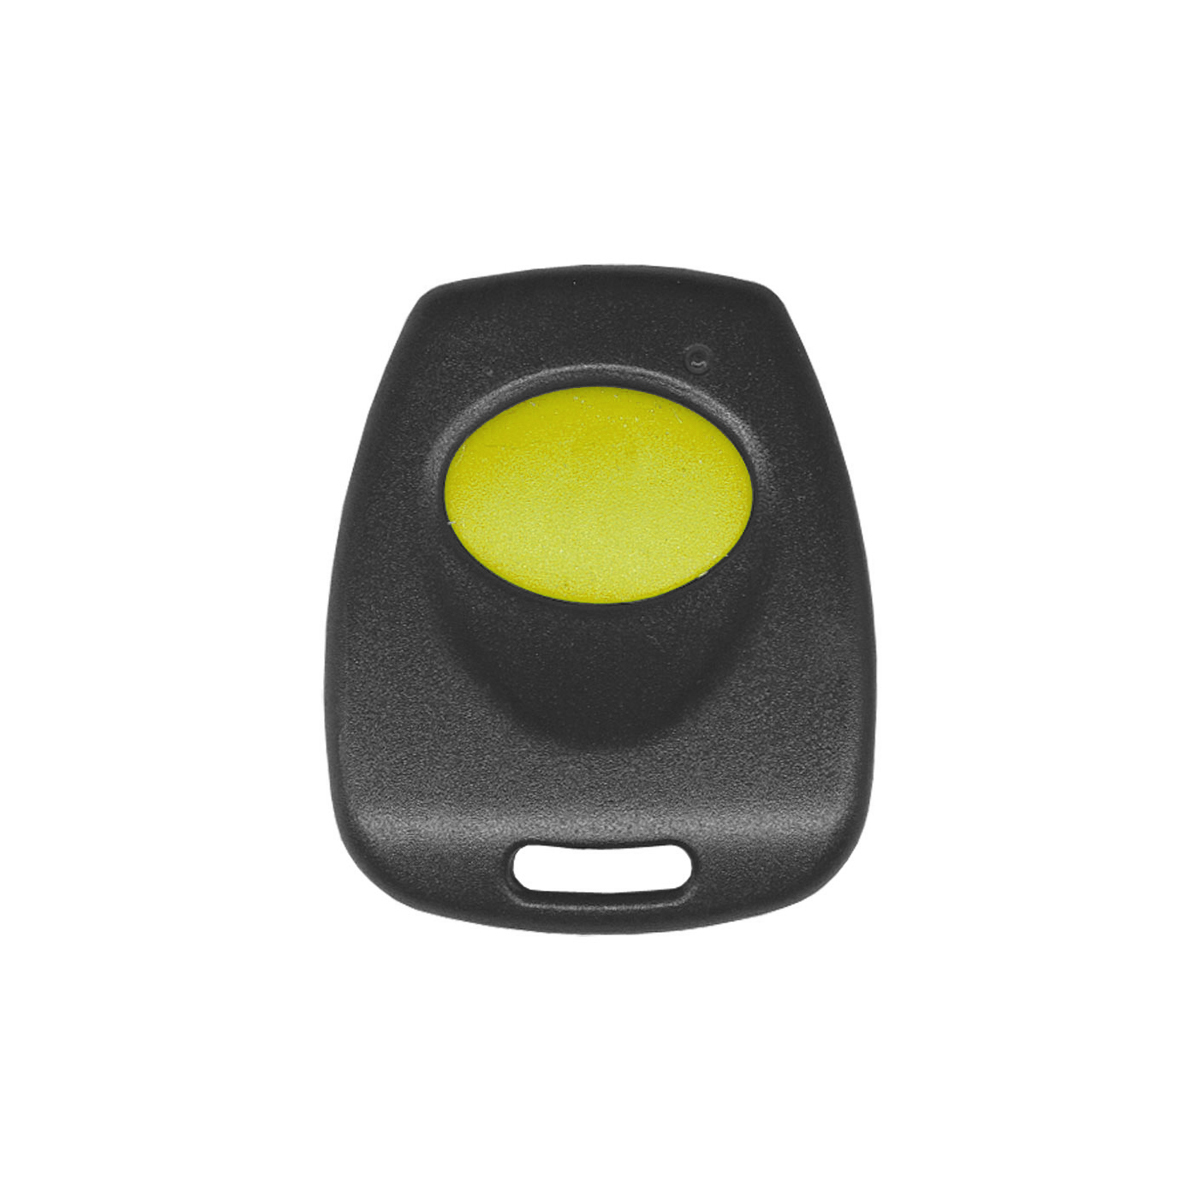 Rhino GLRLTX Single Button Rolling Code Remote